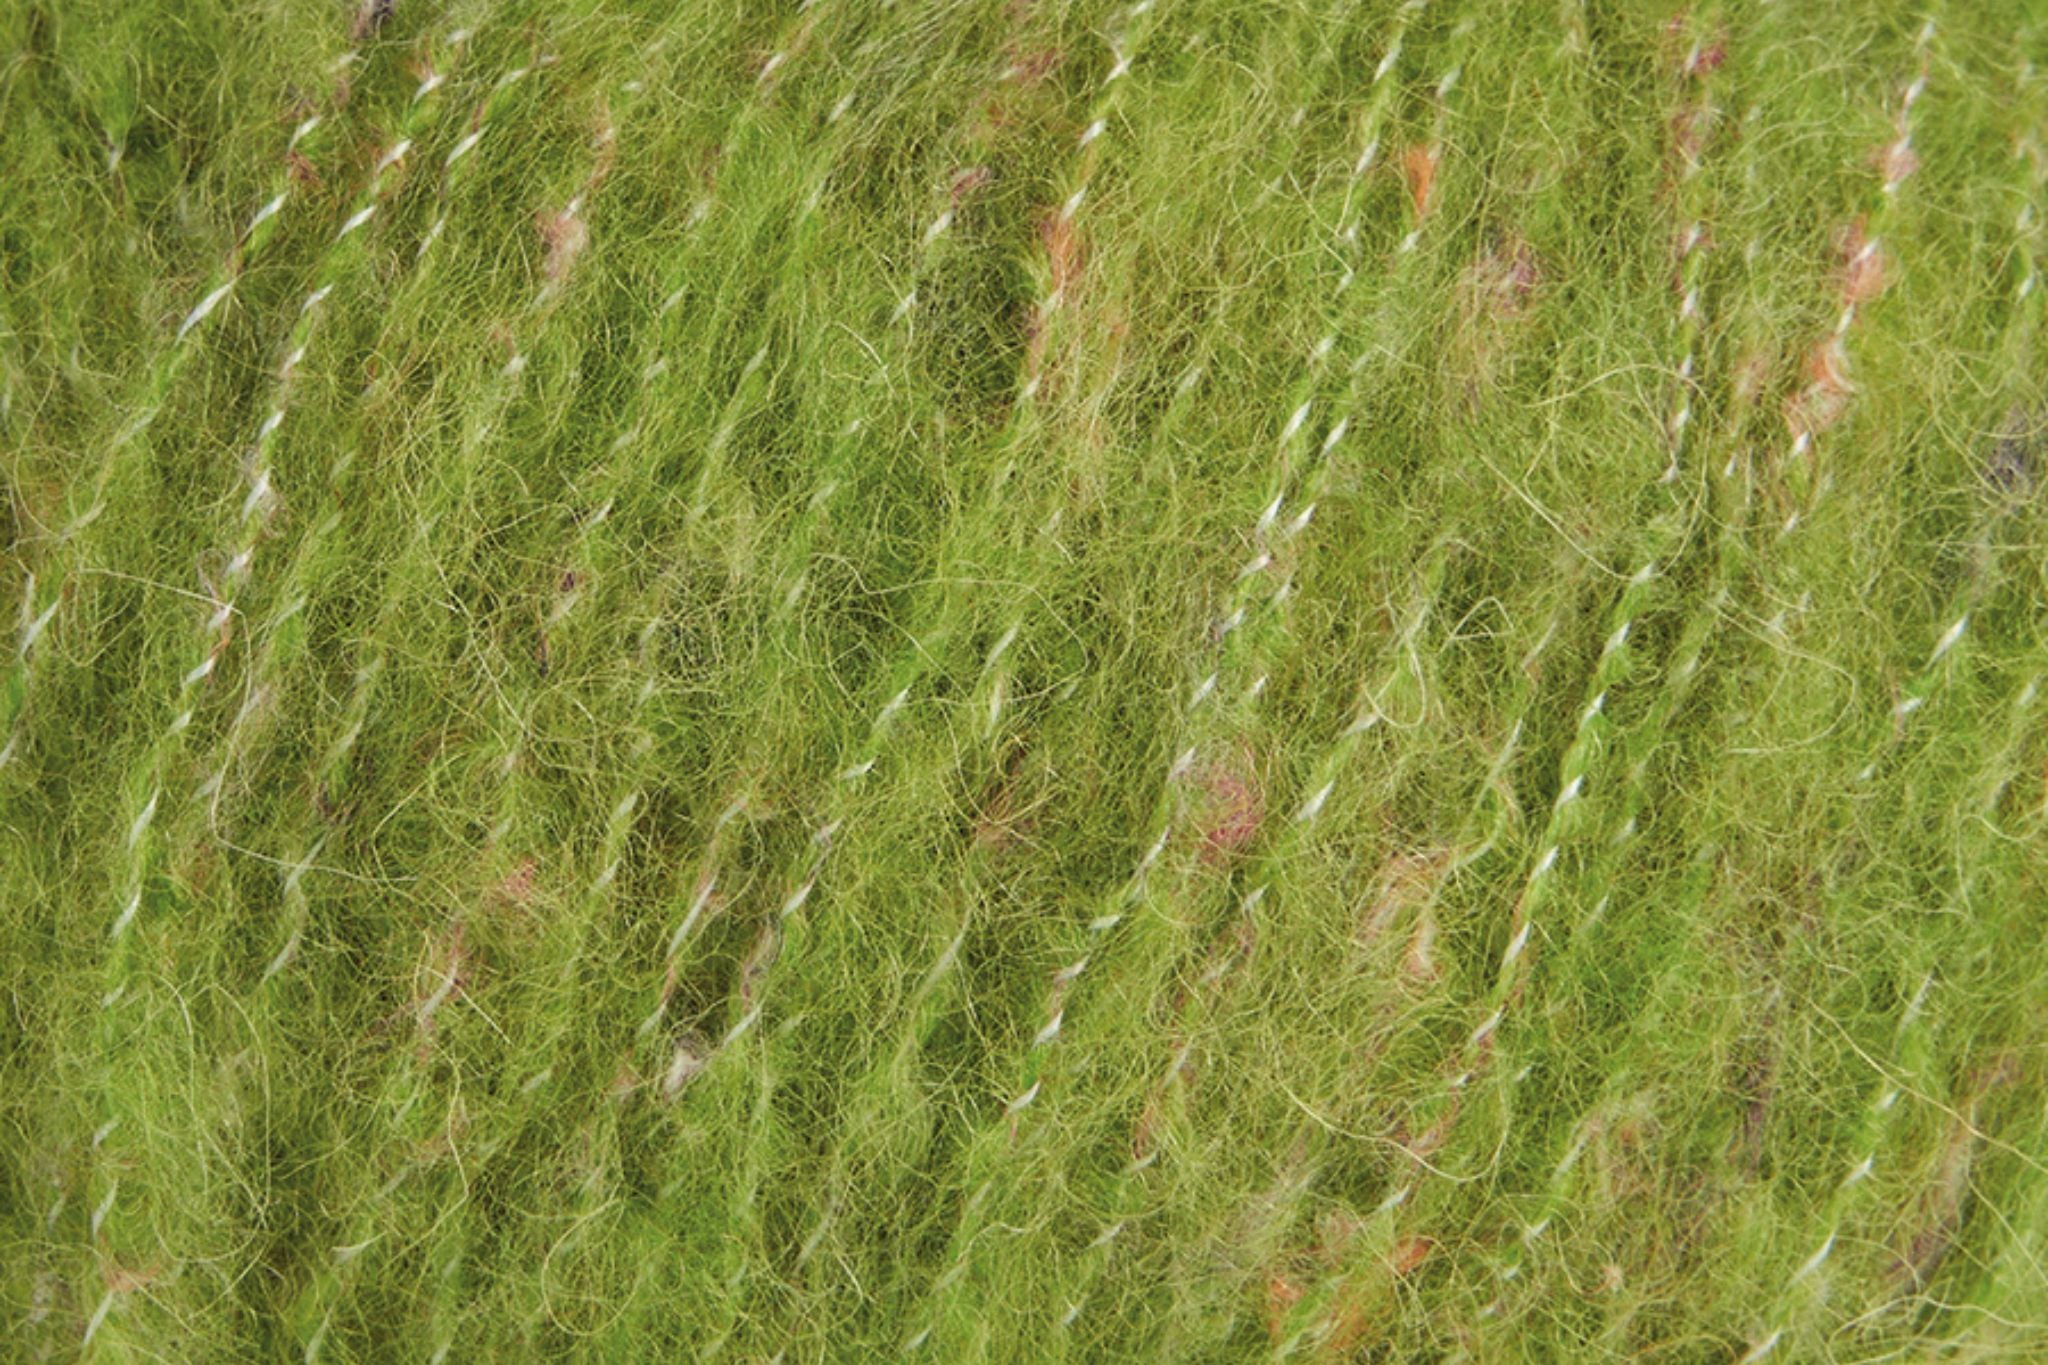 Rowan Fine Tweed Haze in Lawn